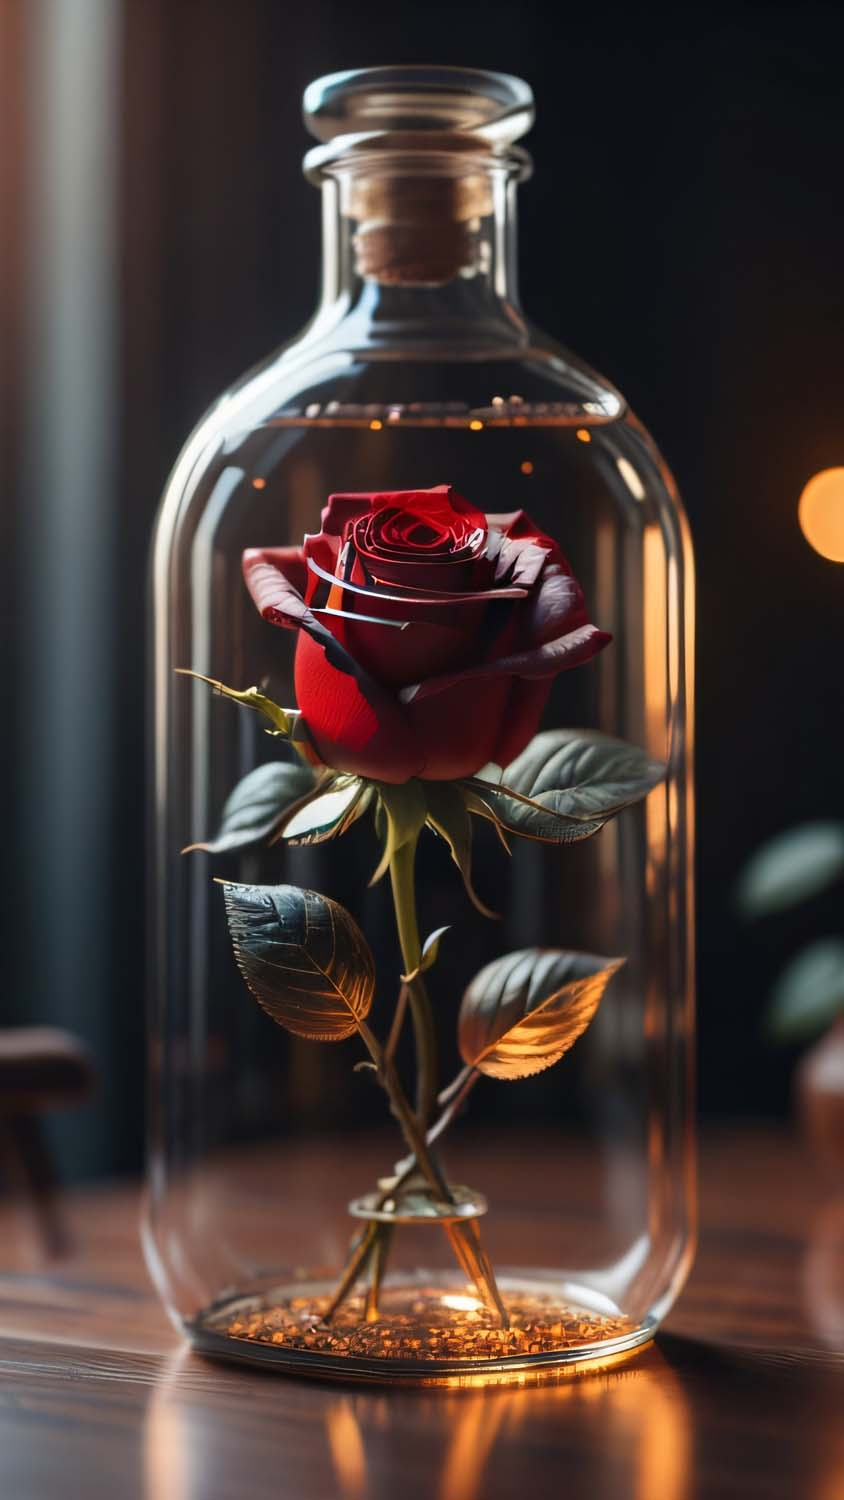 Rose in Glass Jar iPhone Wallpaper 4K  iPhone Wallpapers